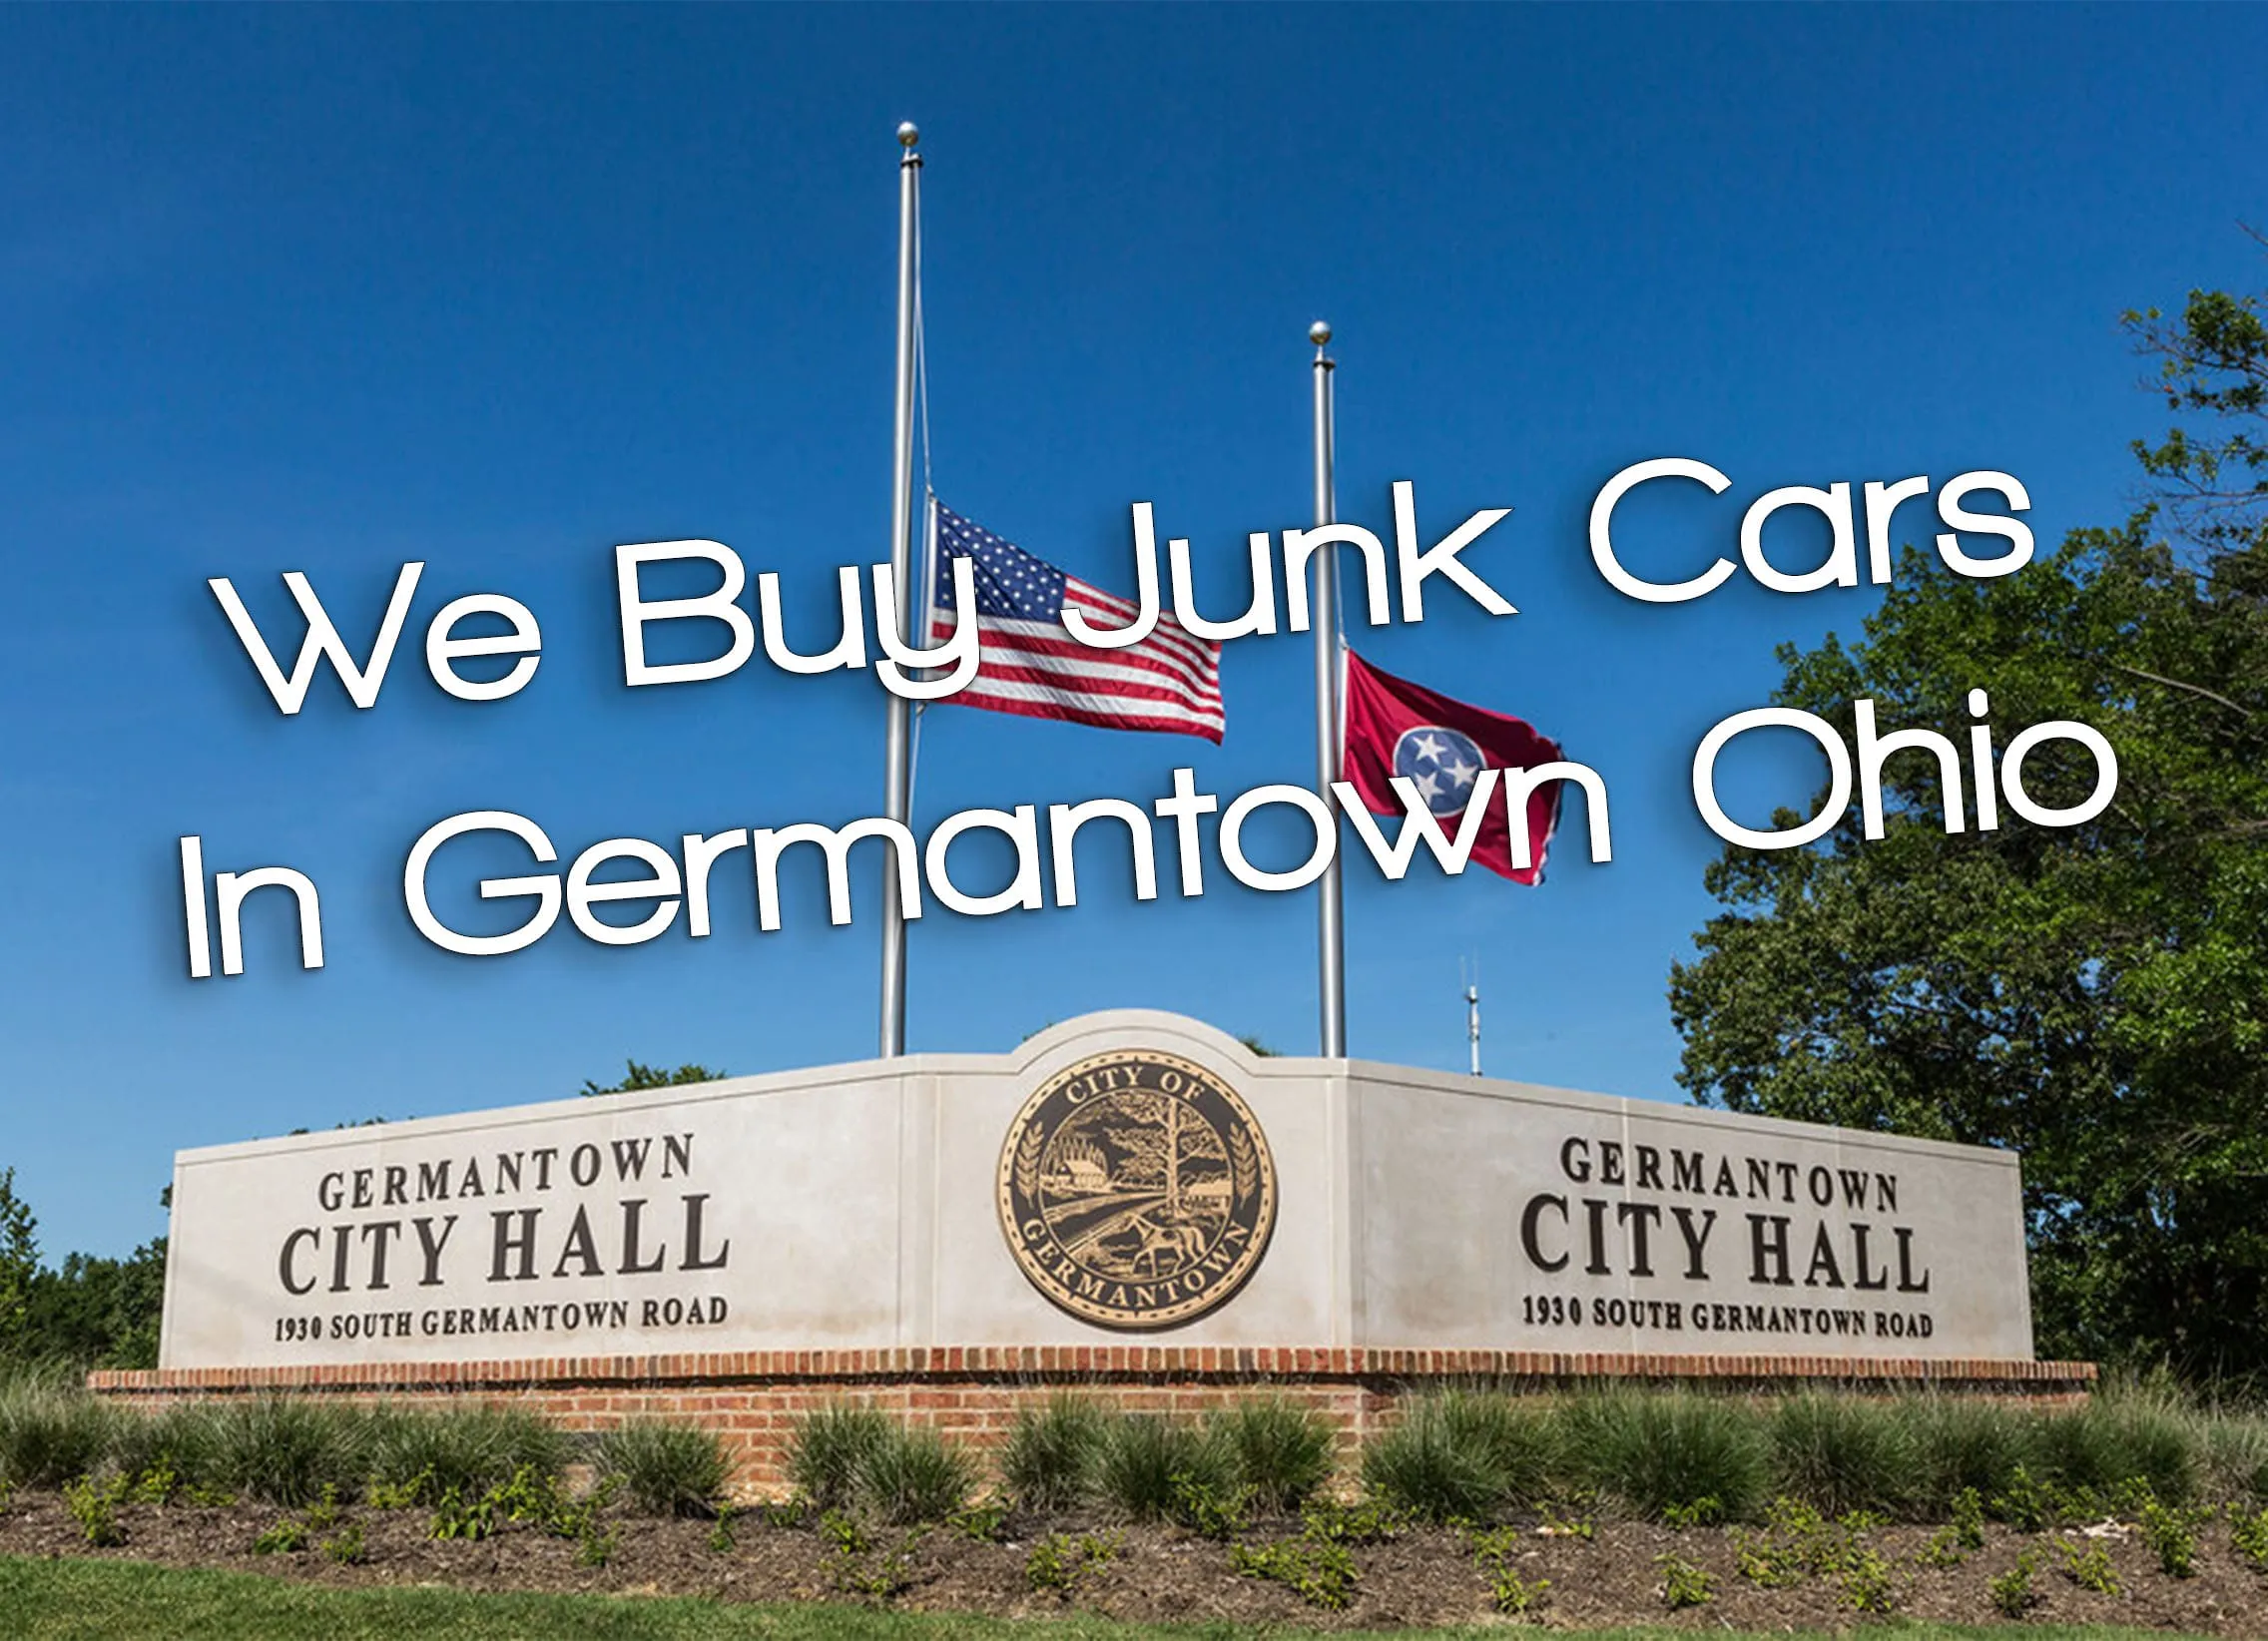 We Buy Junk Cars in Germantown Ohio